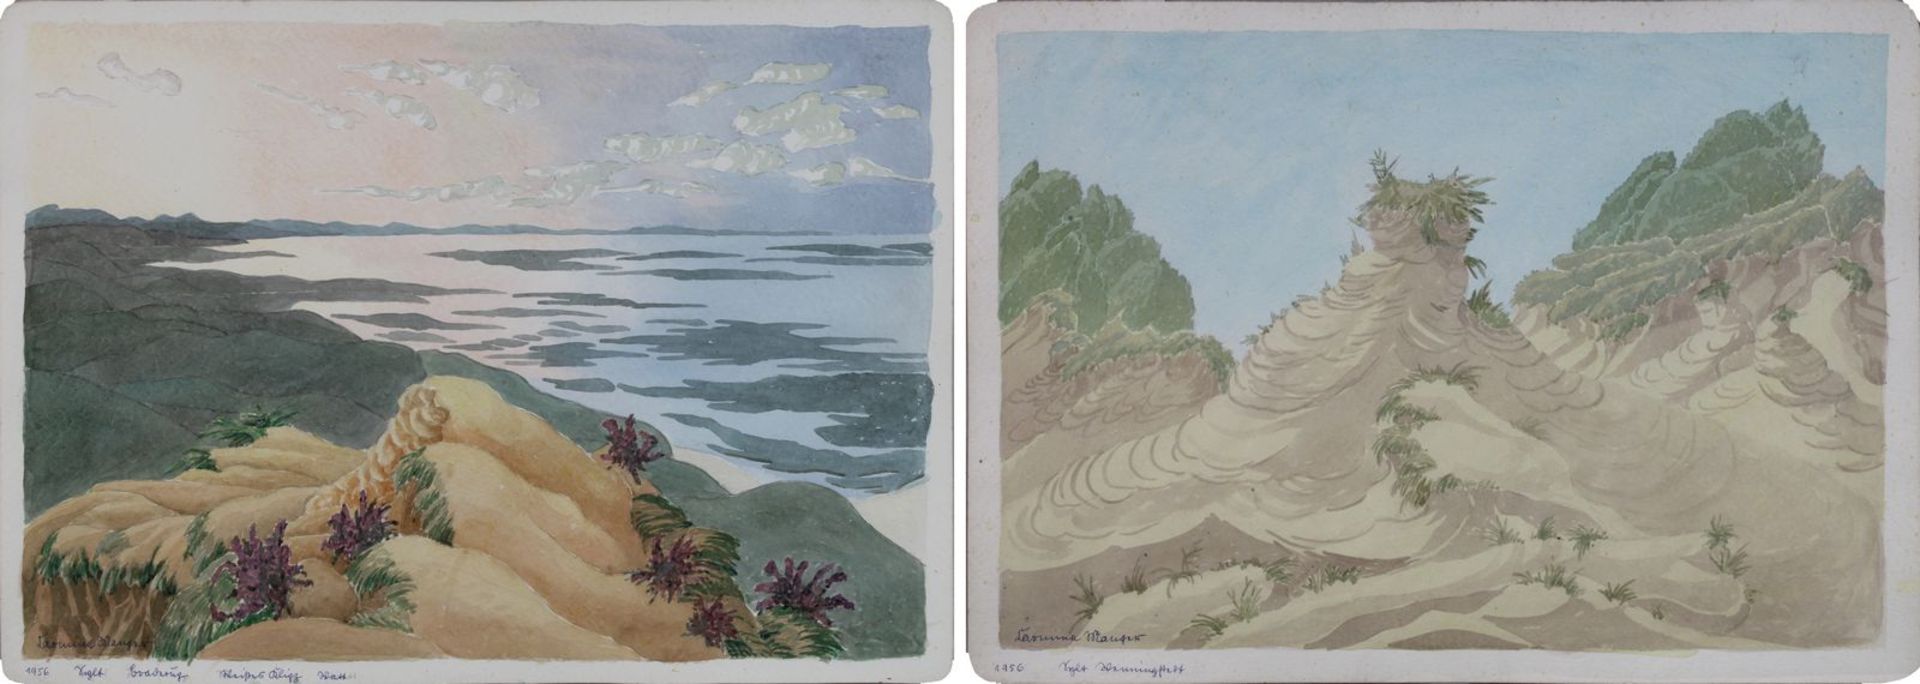 Manger, Carmina (Berlin 1883 - 1979), Zwei zarte Aquarelle mit Sylter Motiven: "Sylt Braderup Weißes